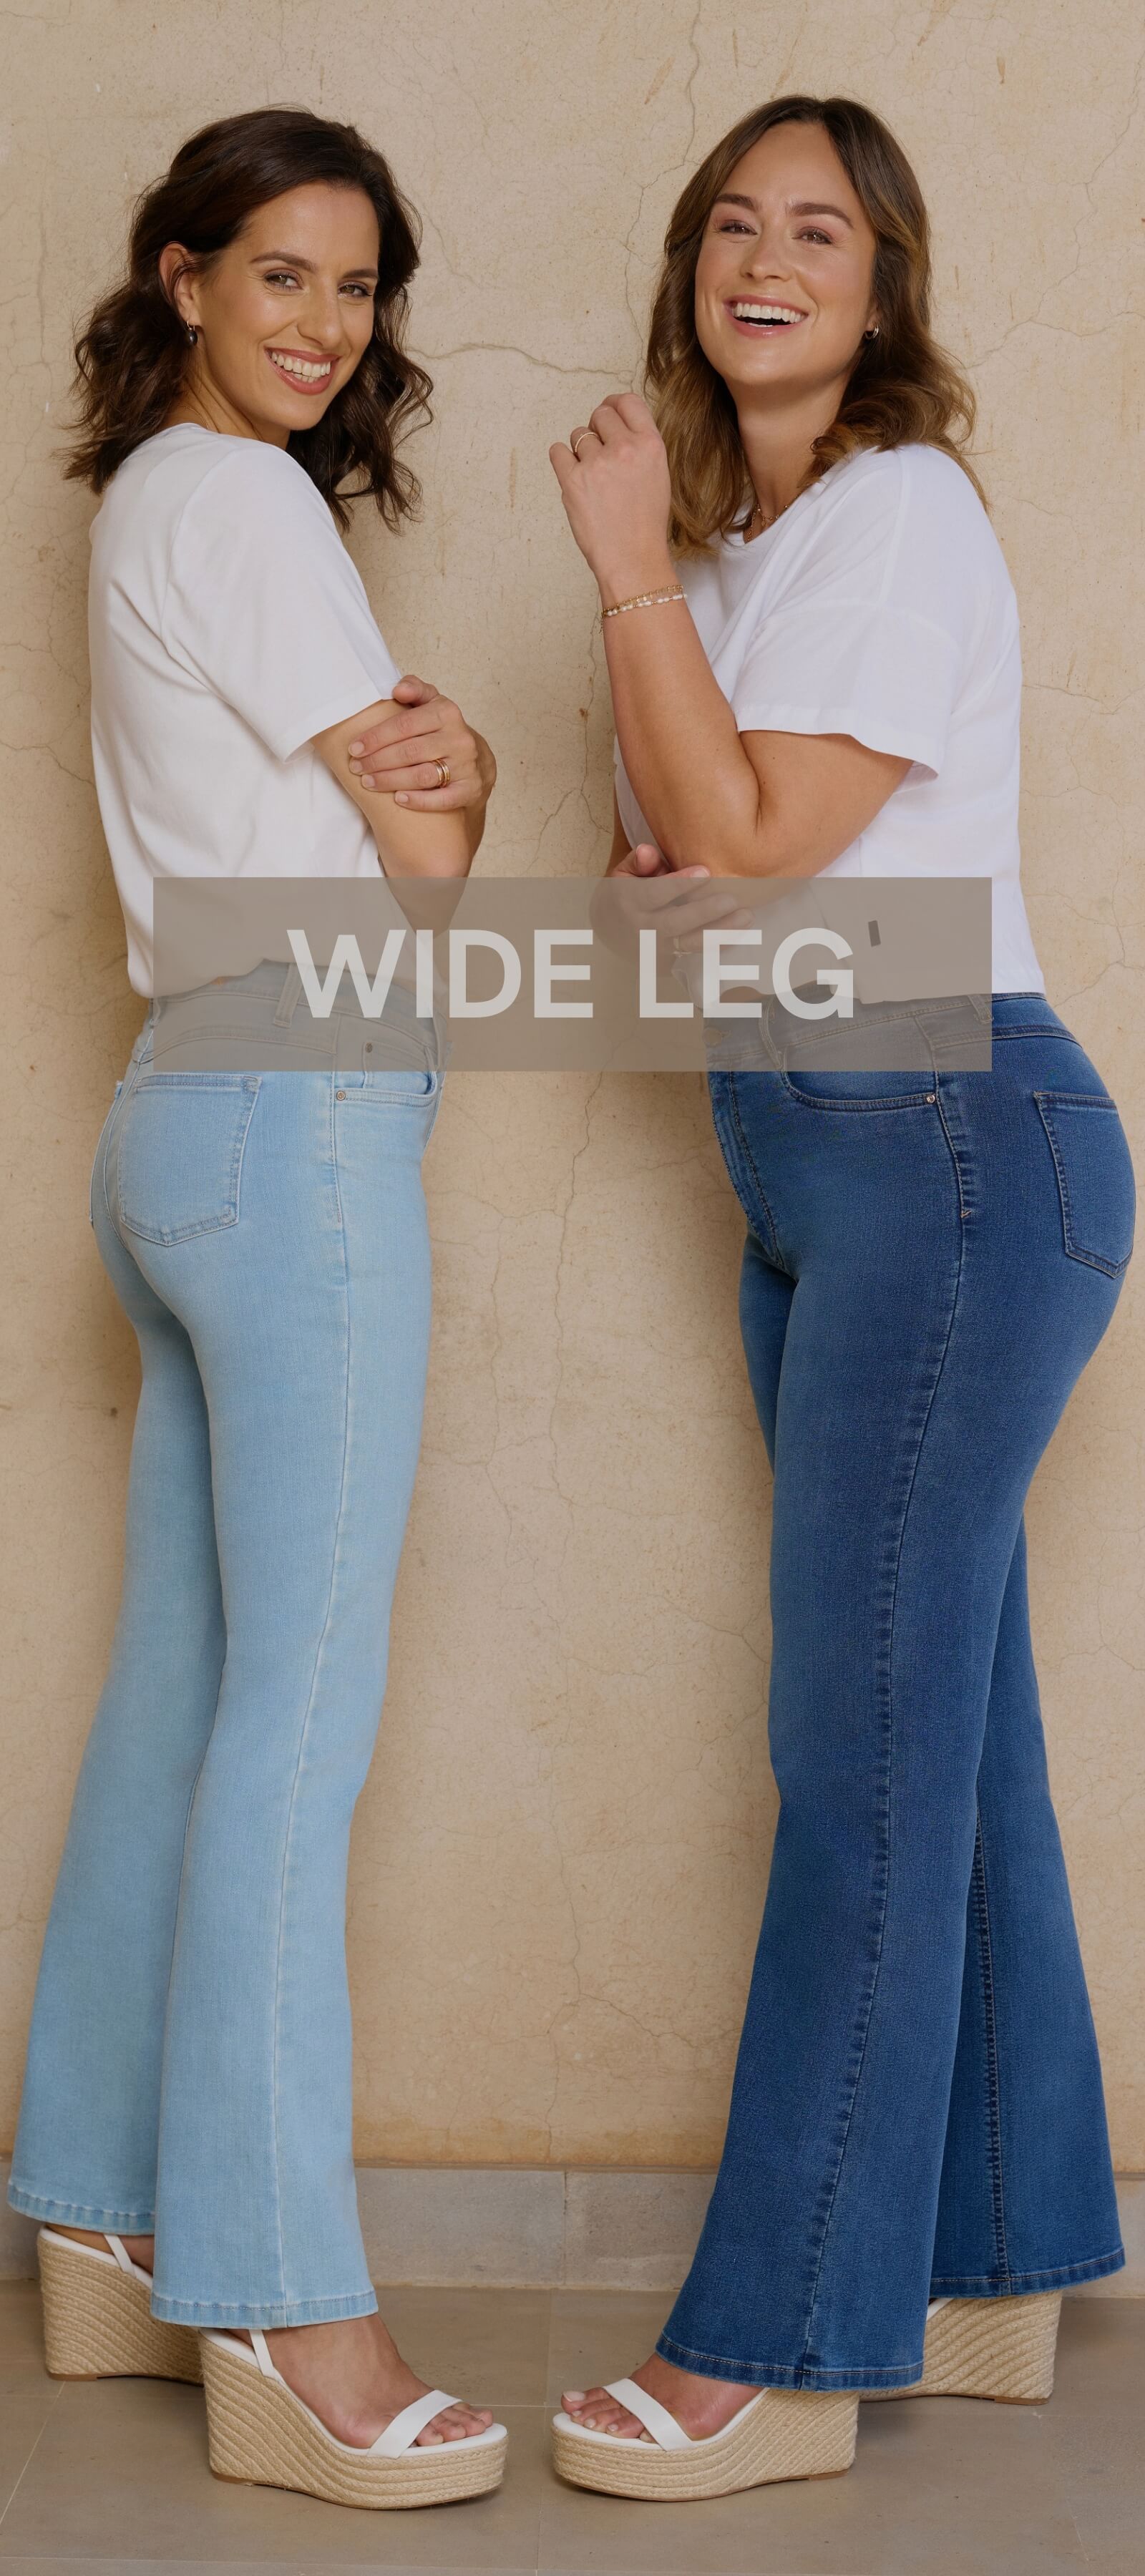 Wide leg